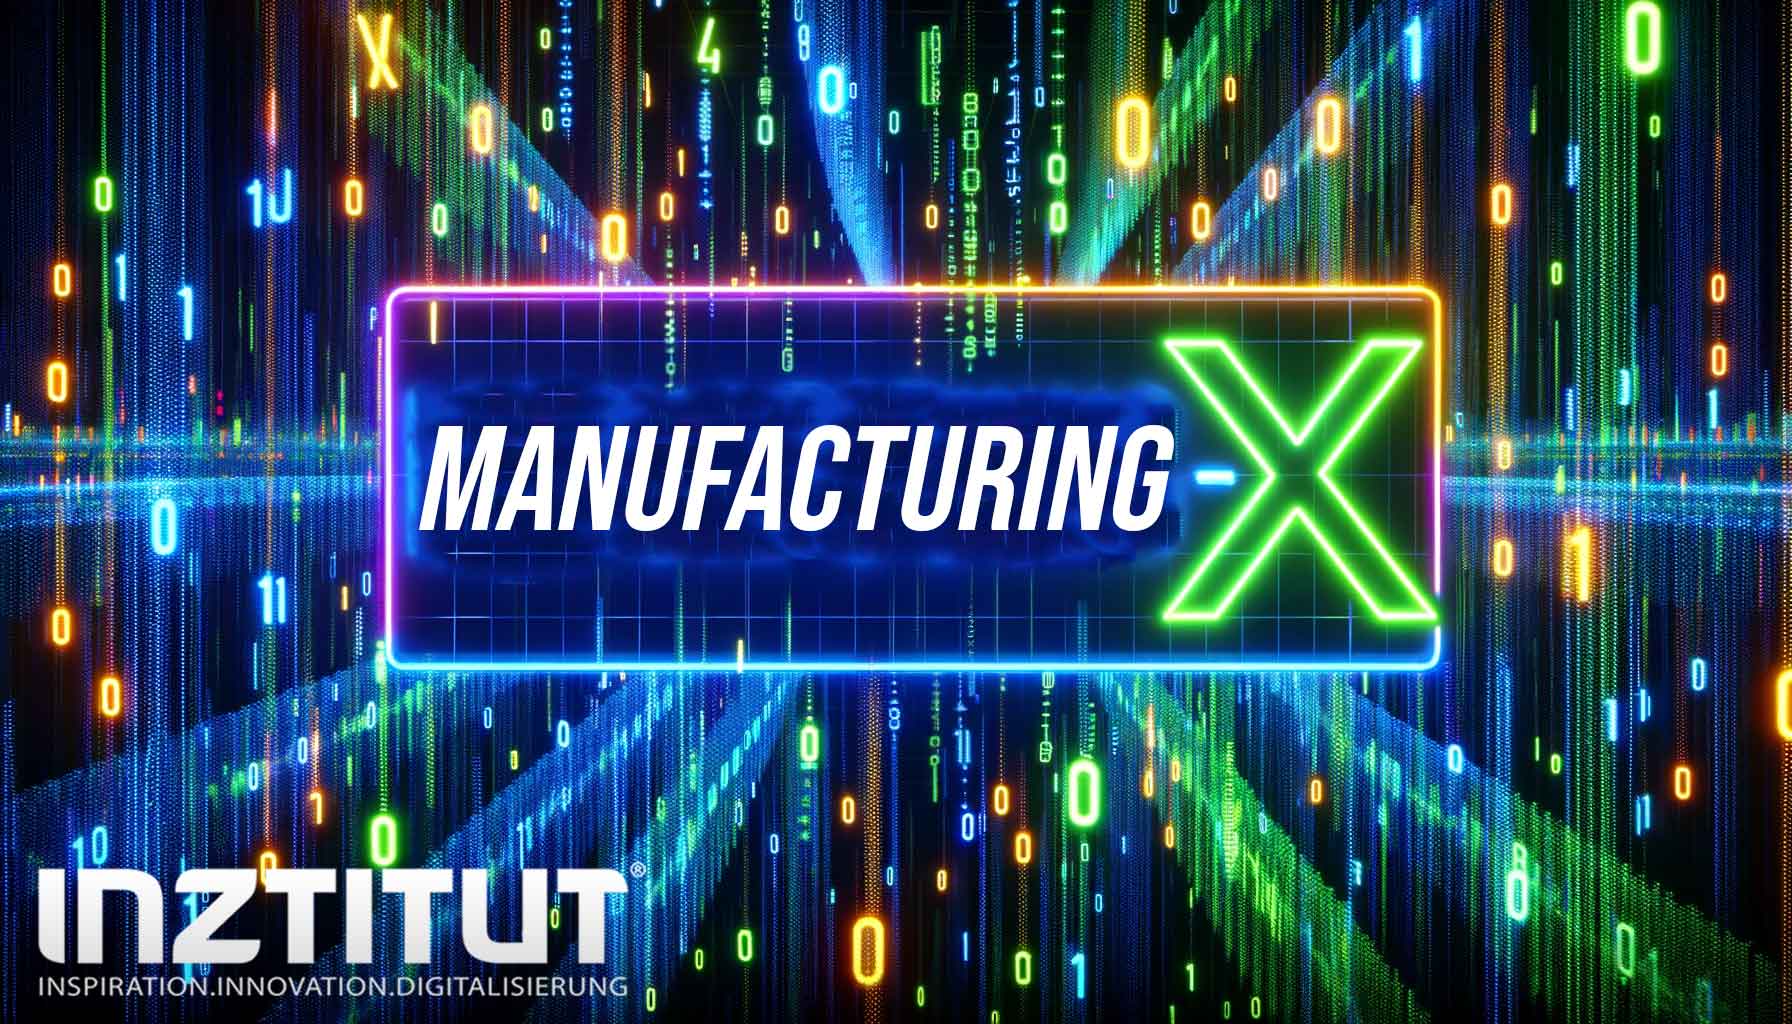 Manufacturing-X - Digitalisierung der Lieferketten in der Industrie